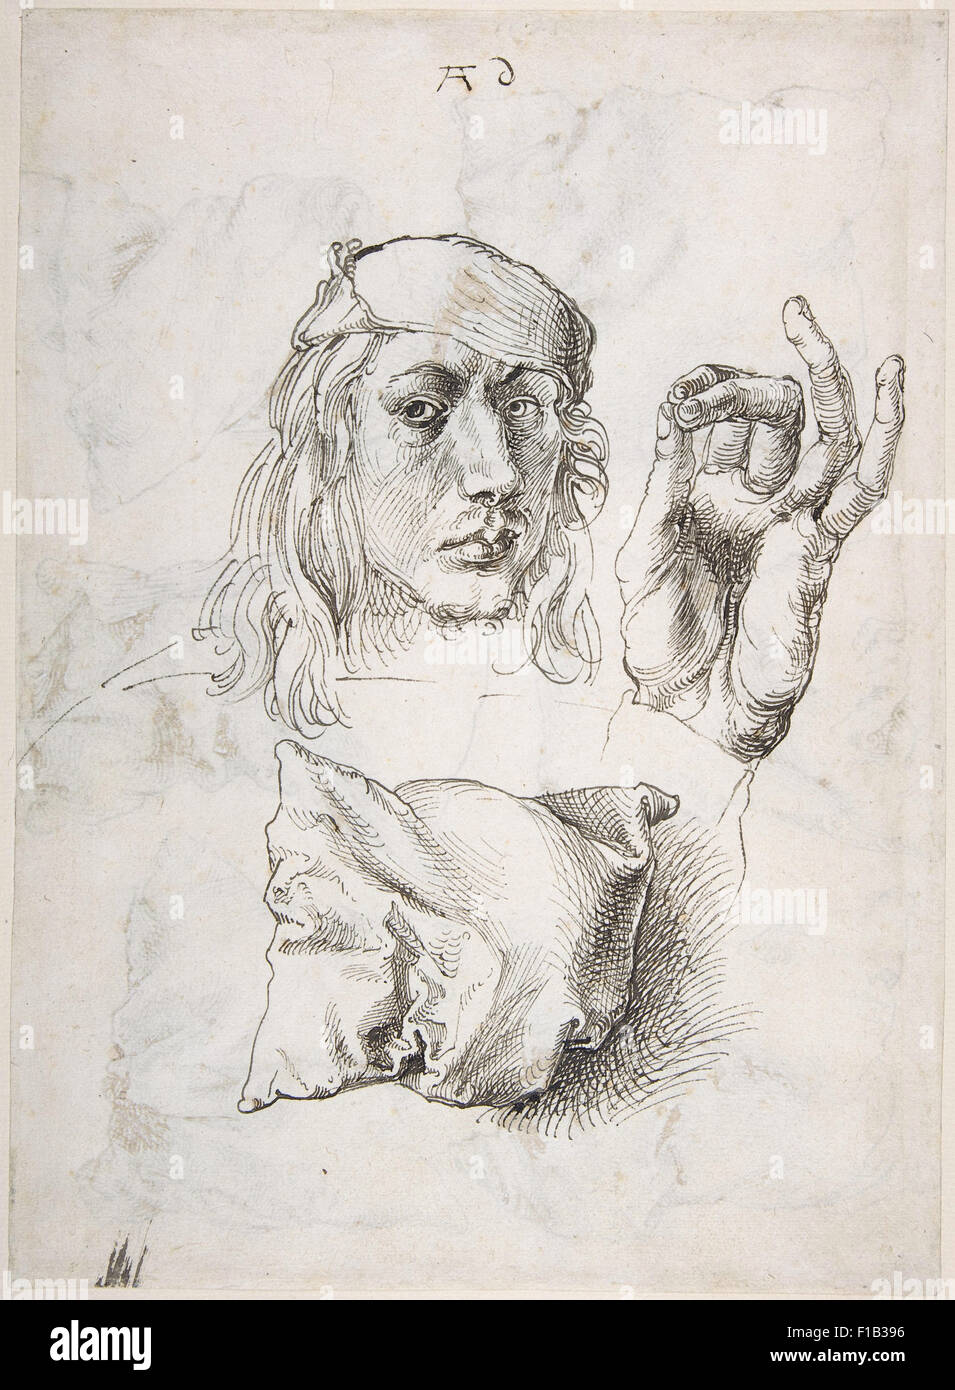 Albrecht Dürer - Studio foglio con ritratto di auto, la mano e cuscini Foto Stock